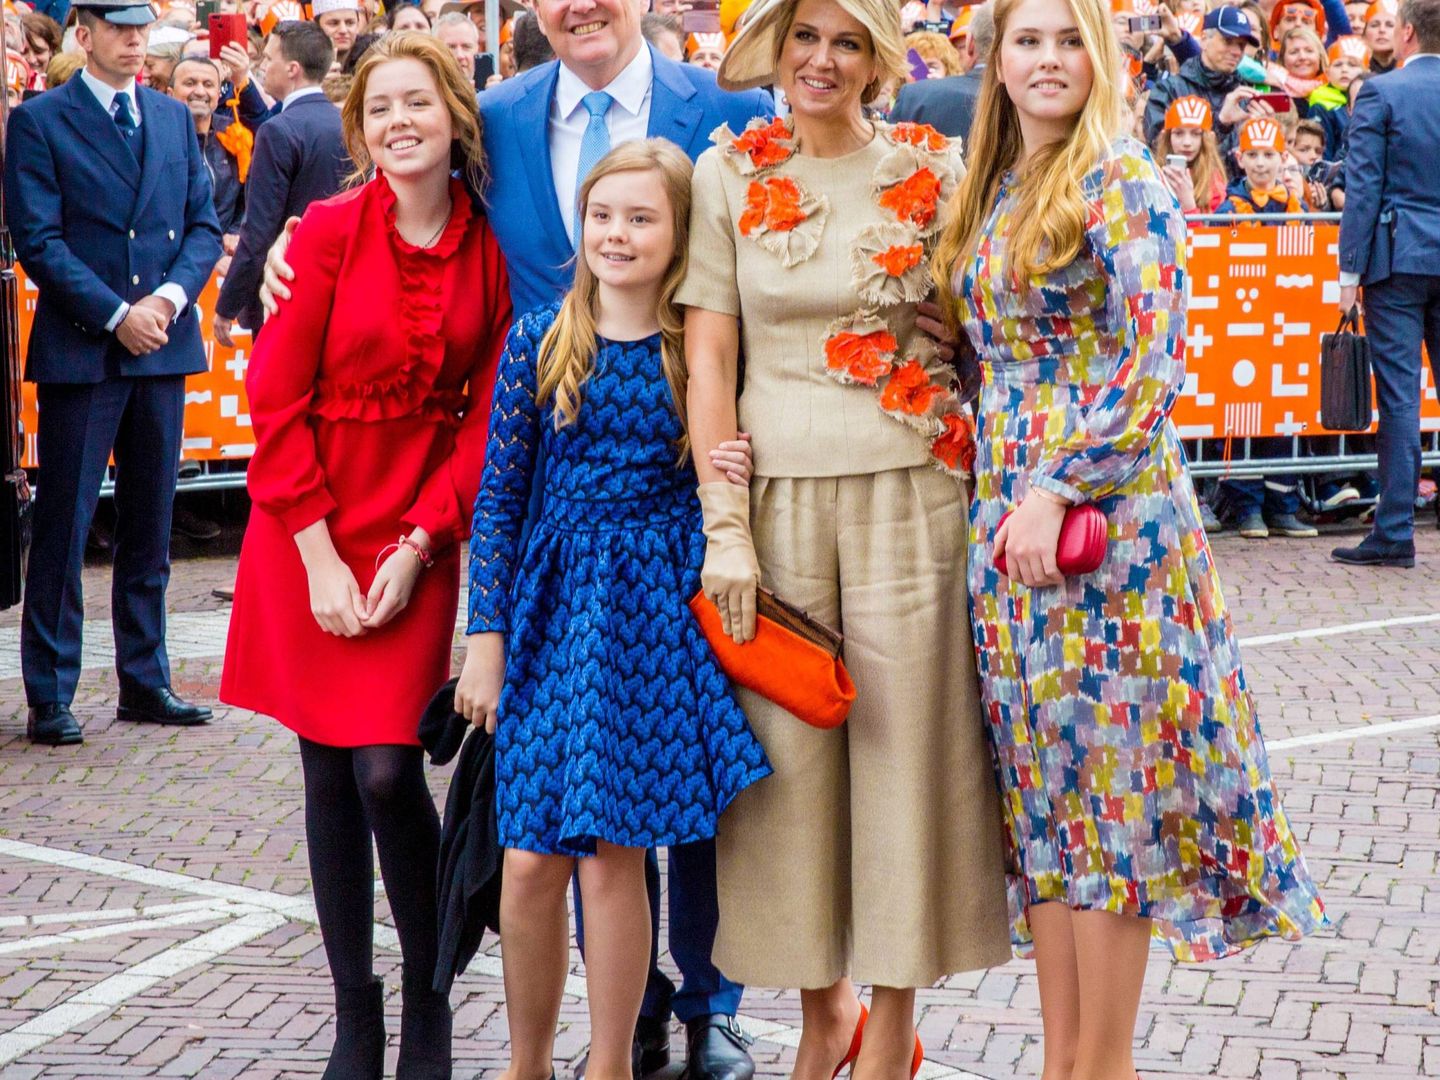 La familia real holandesa al completo. (Cordon Press)